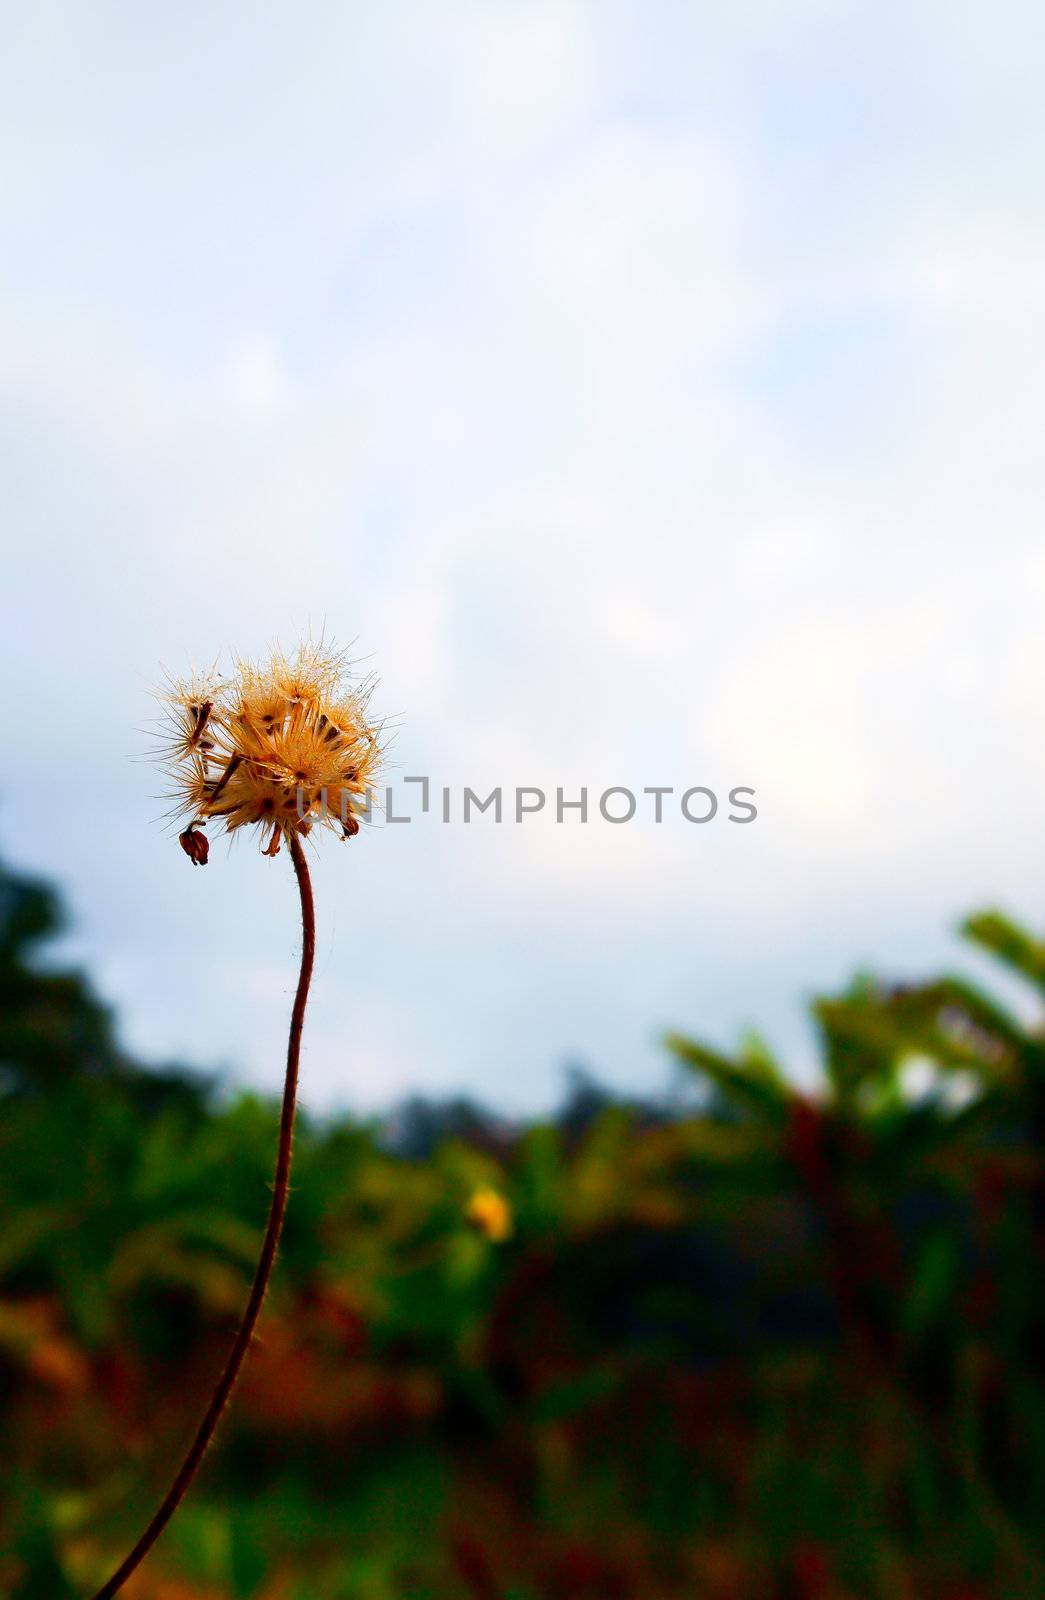 The dandelion by gjeerawut